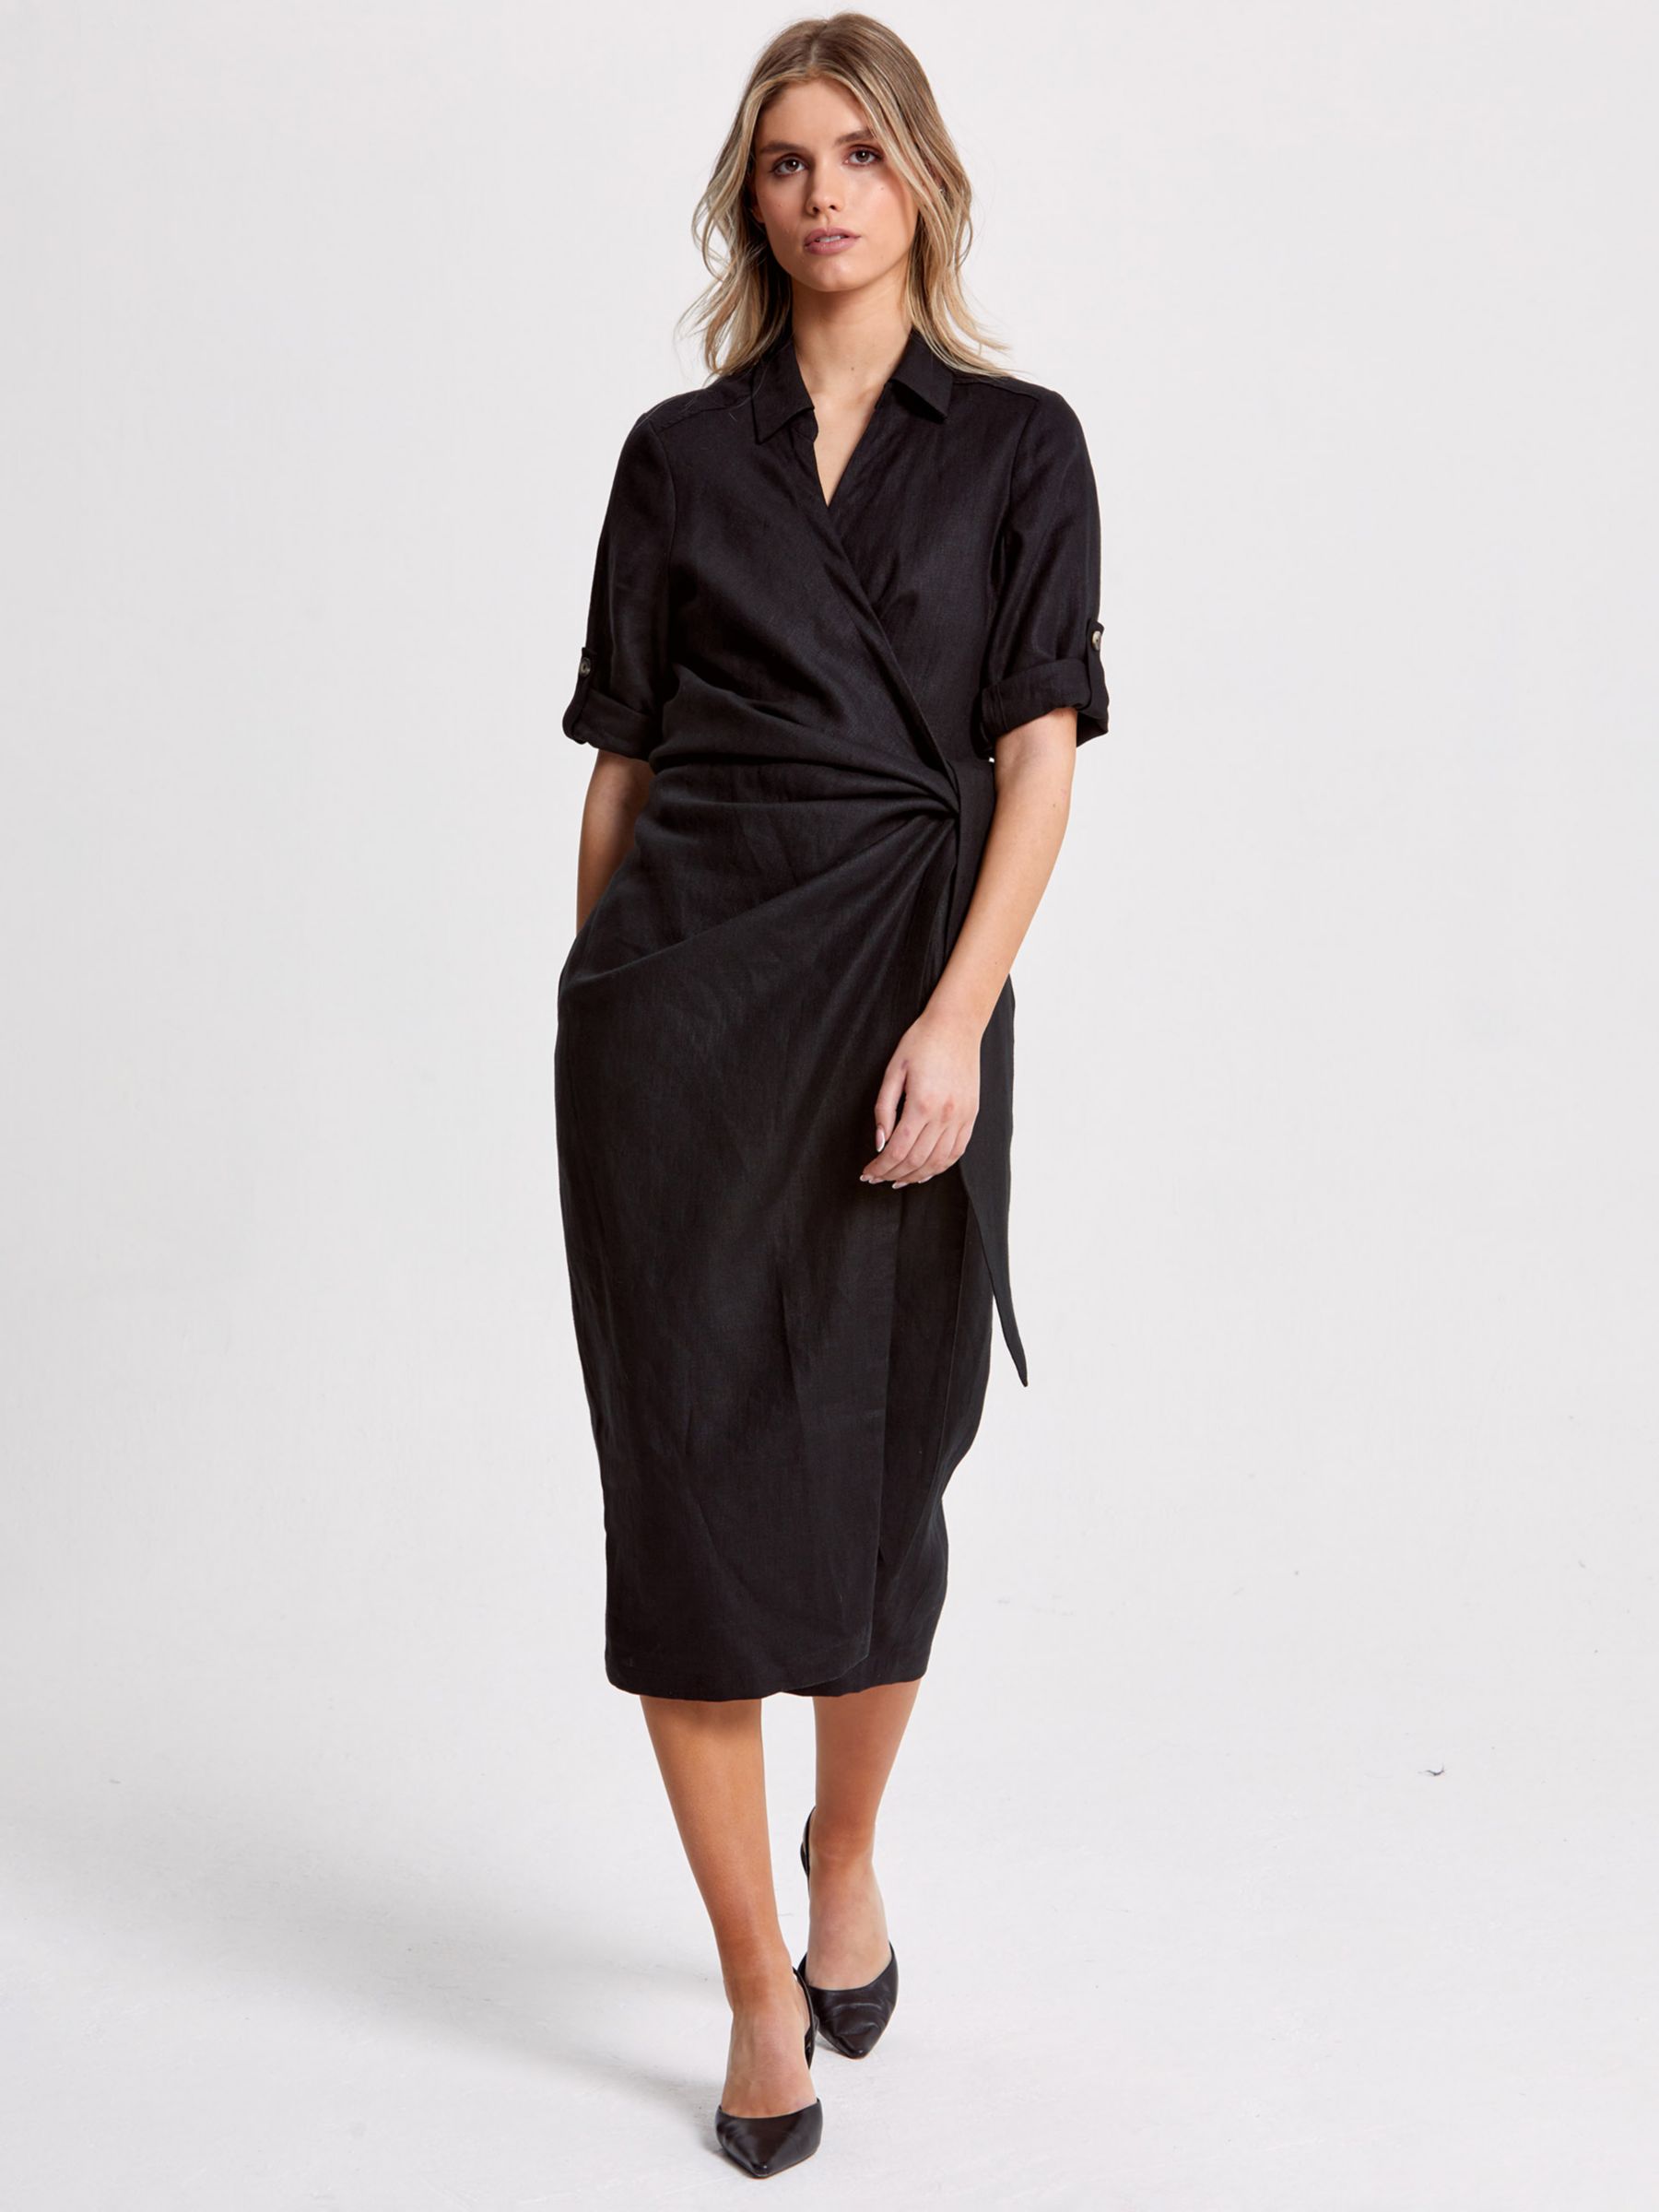 Helen McAlinden Leonne Wrap Midi Dress, Black, S